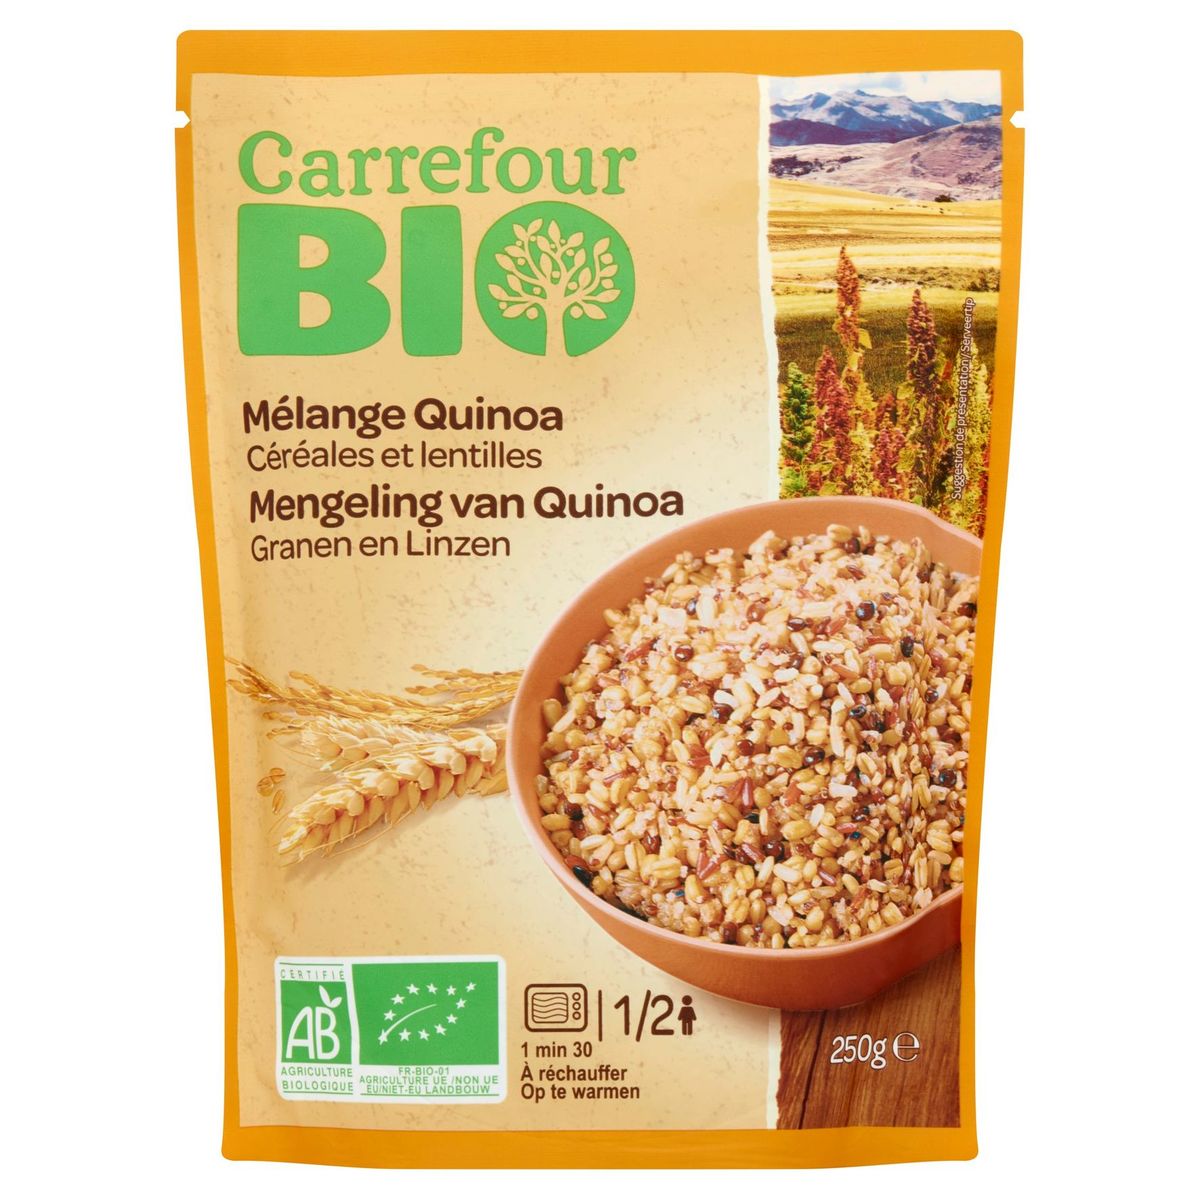 Carrefour Bio Mélange Quinoa Céréales et Lentilles 250 g